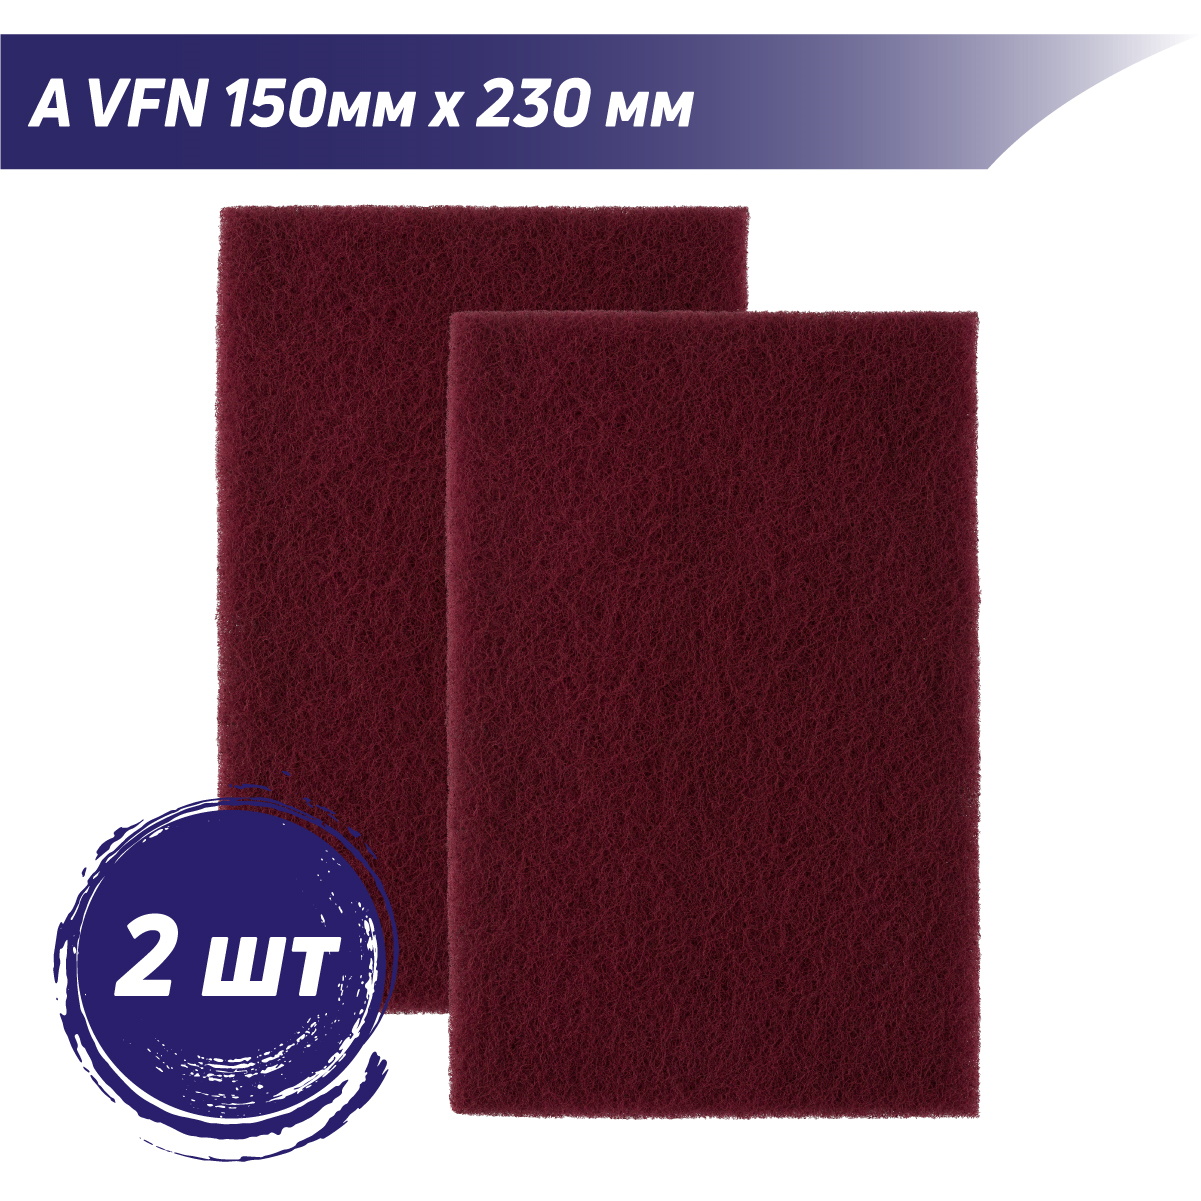 Лист шлифовальный универсальный A VFN бордовый PROBOS Forming N744 150mm x 230mm, 2 шт/уп визитница 18 листов бордовый